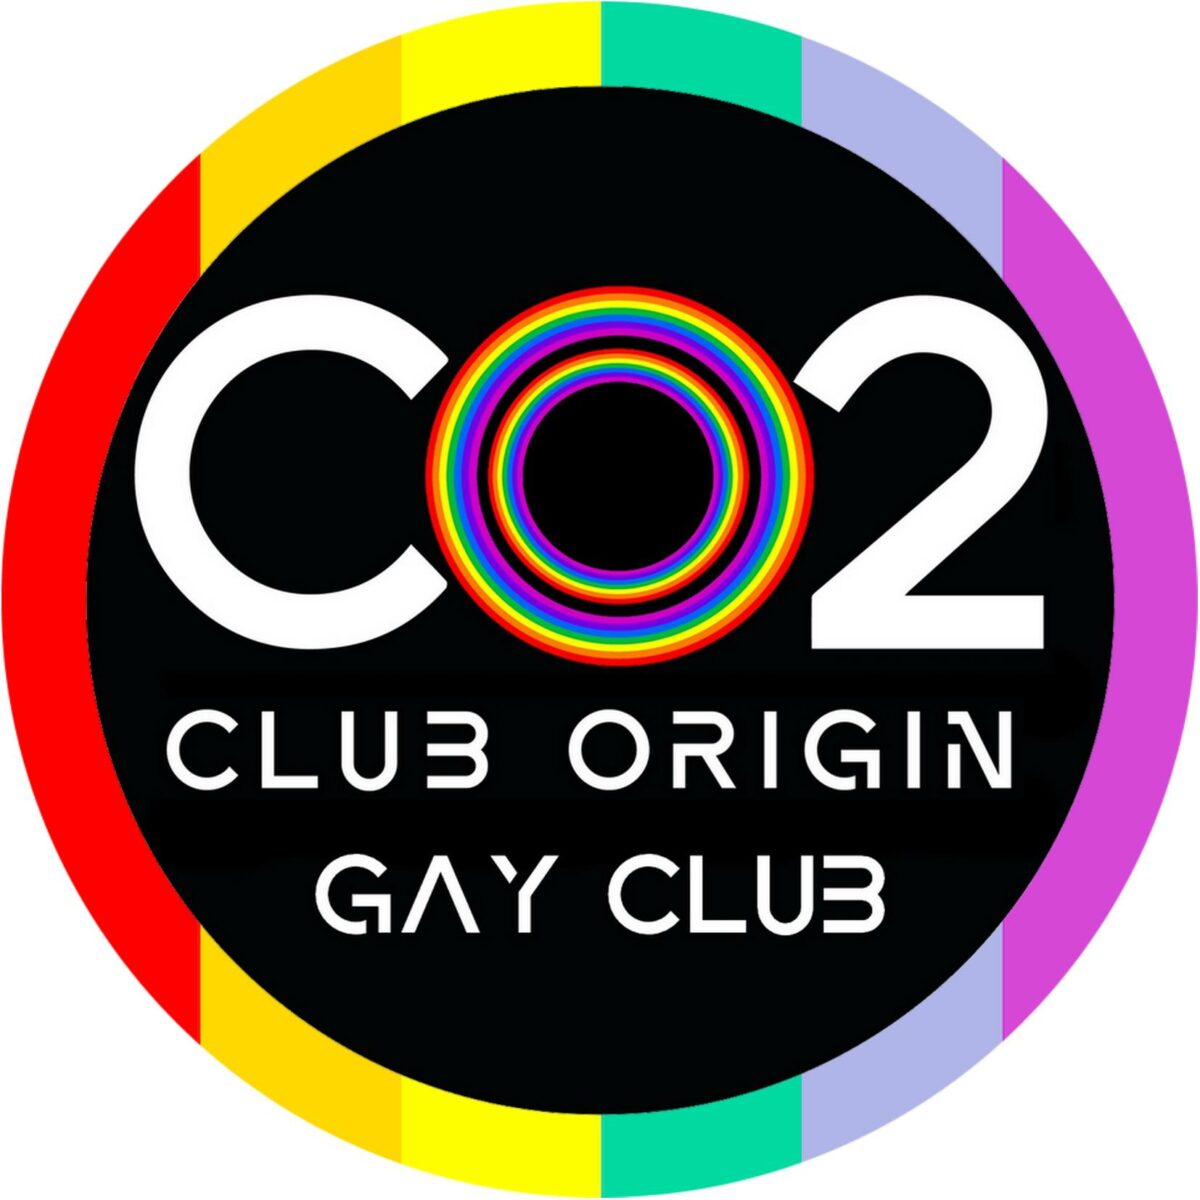 CO2 Club Origin